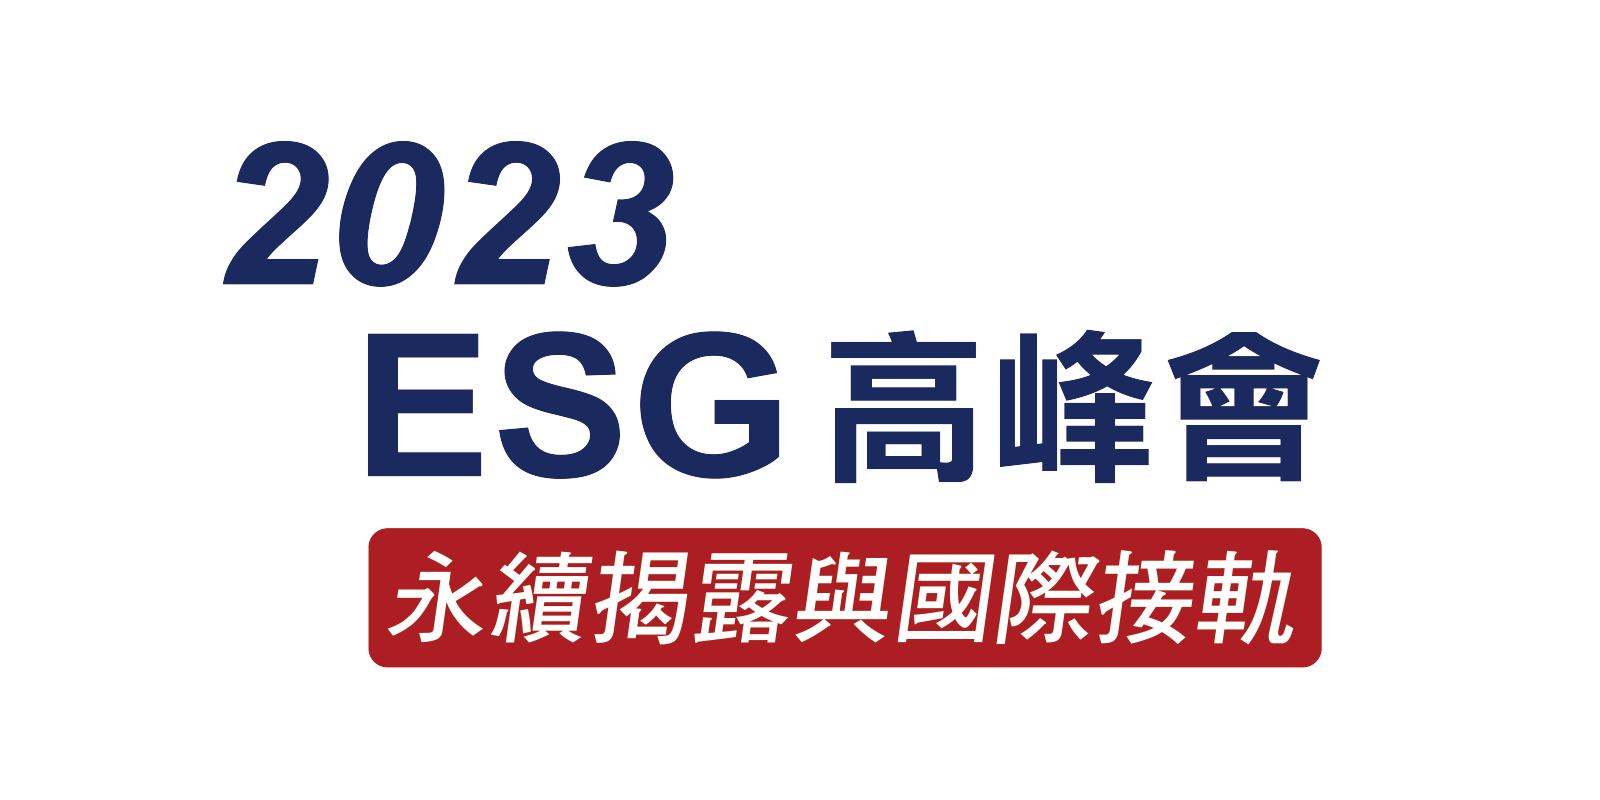 2023esg高峰會logo